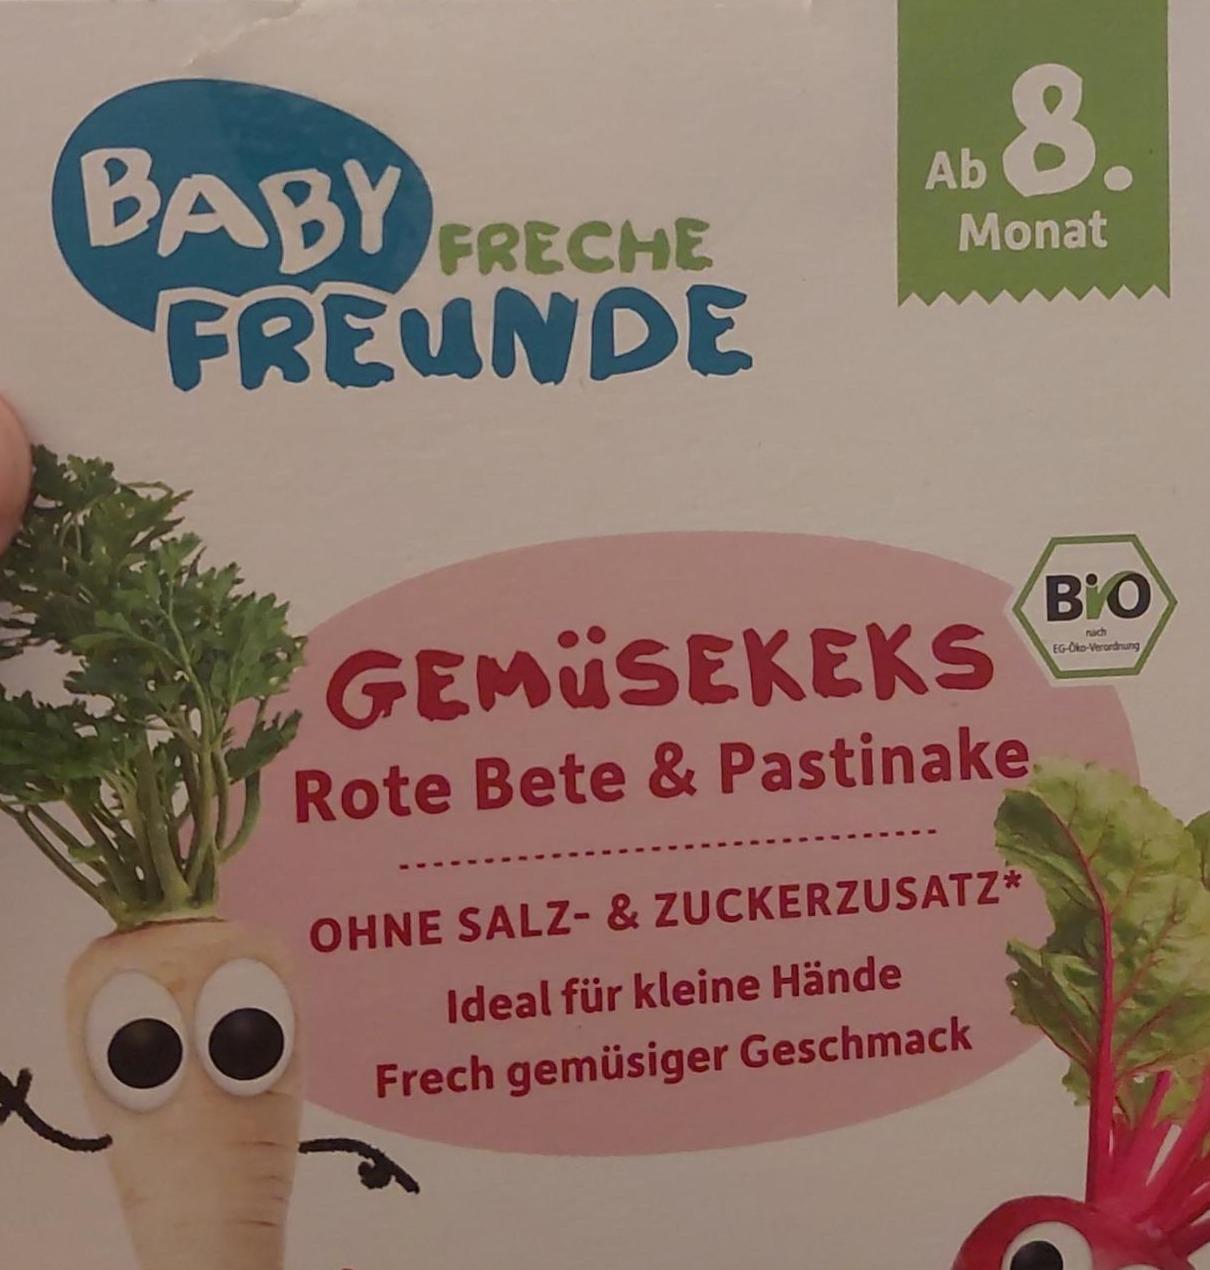 Fotografie - Bio Gemüsekeks Rote Bete & Pastinake Baby Freche Freunde